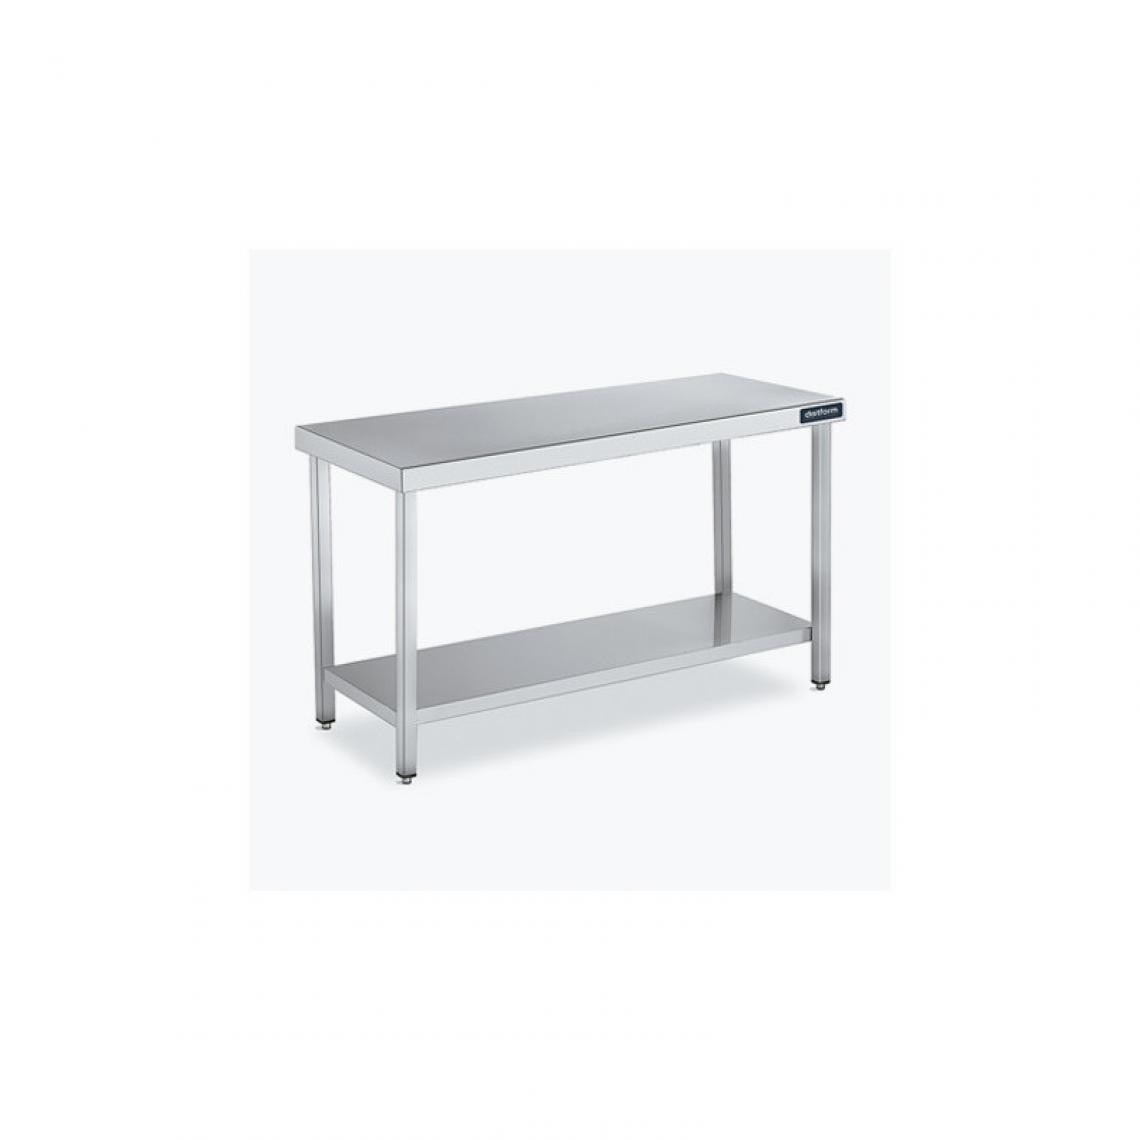 DISTFORM - Table Centrale 600x700X600 avec Étagère - Distform - Inox 18/101300x700x600mm - Tables à manger